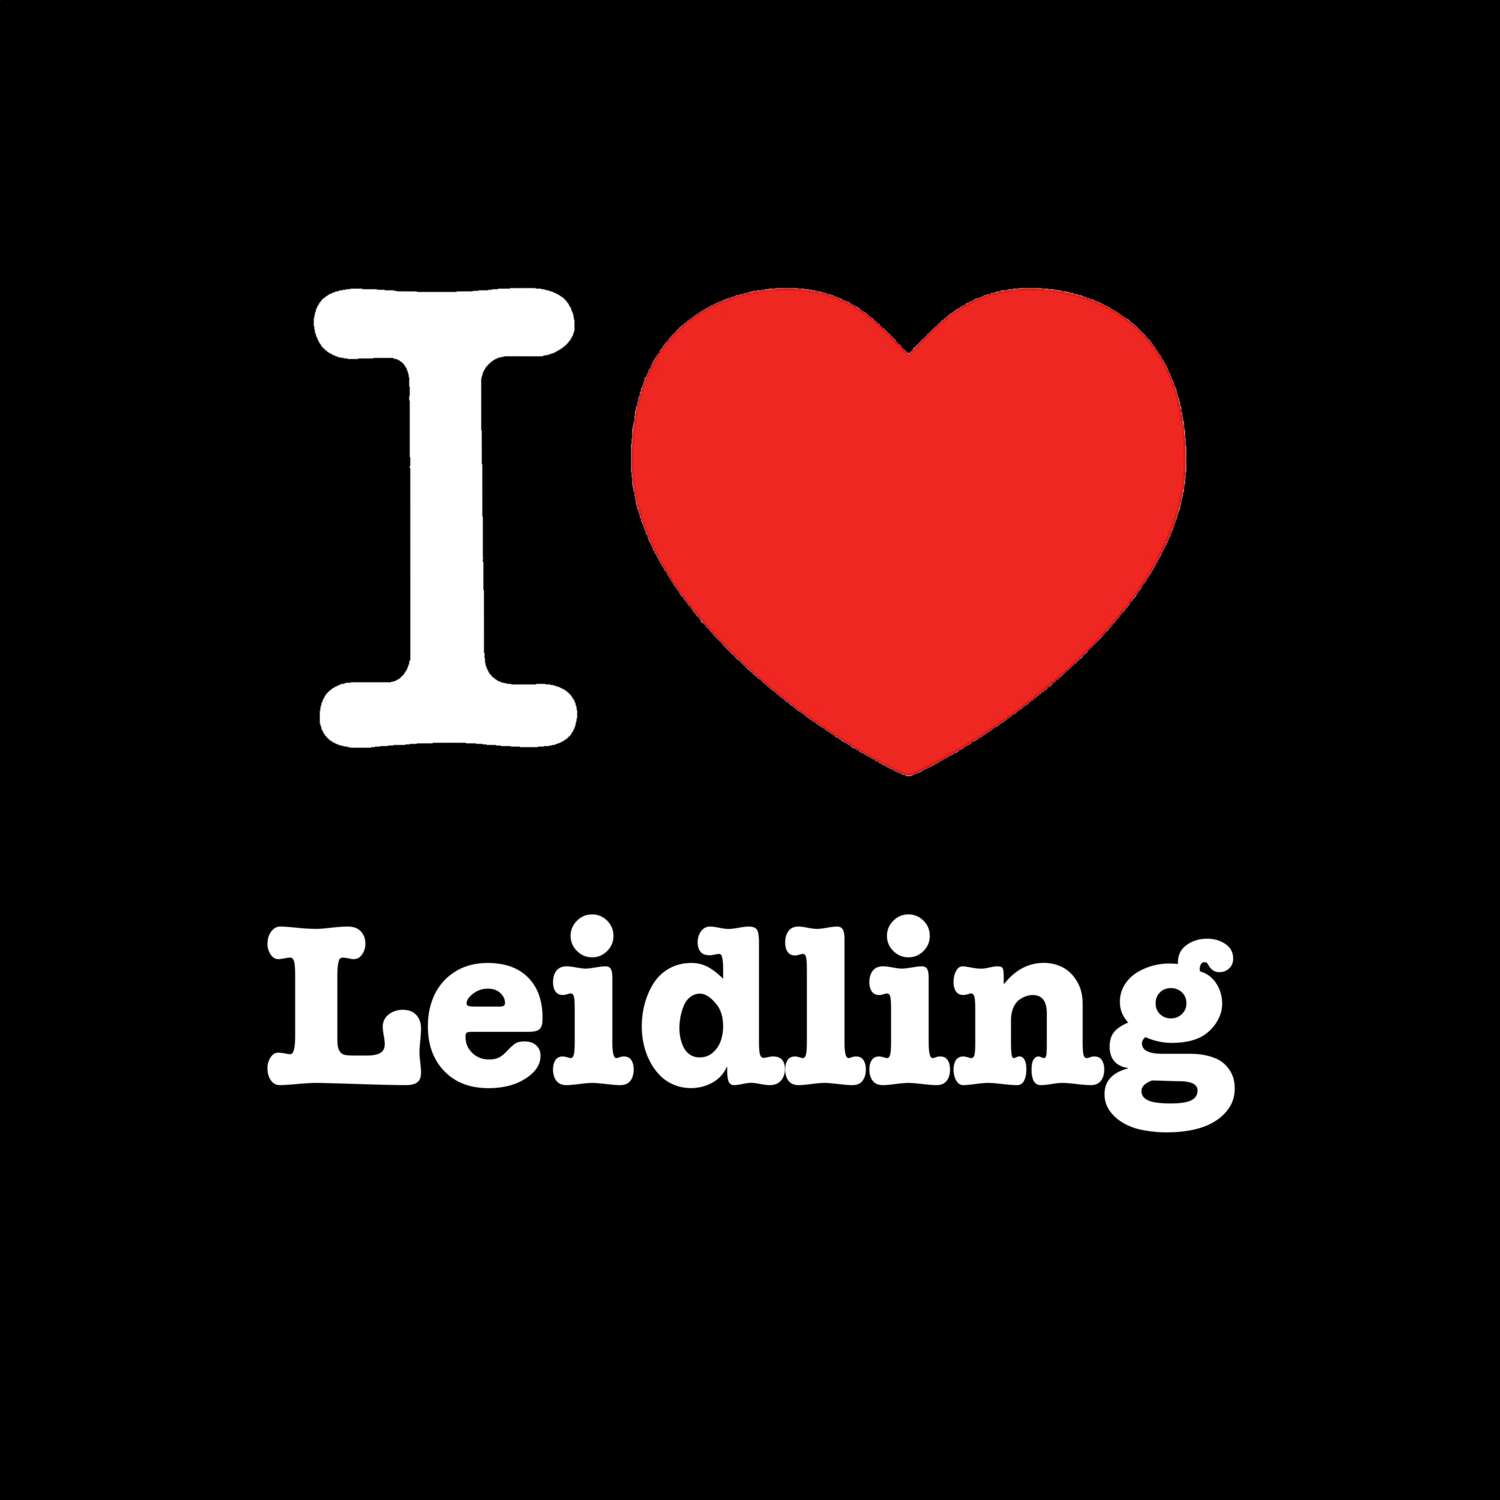 Leidling T-Shirt »I love«